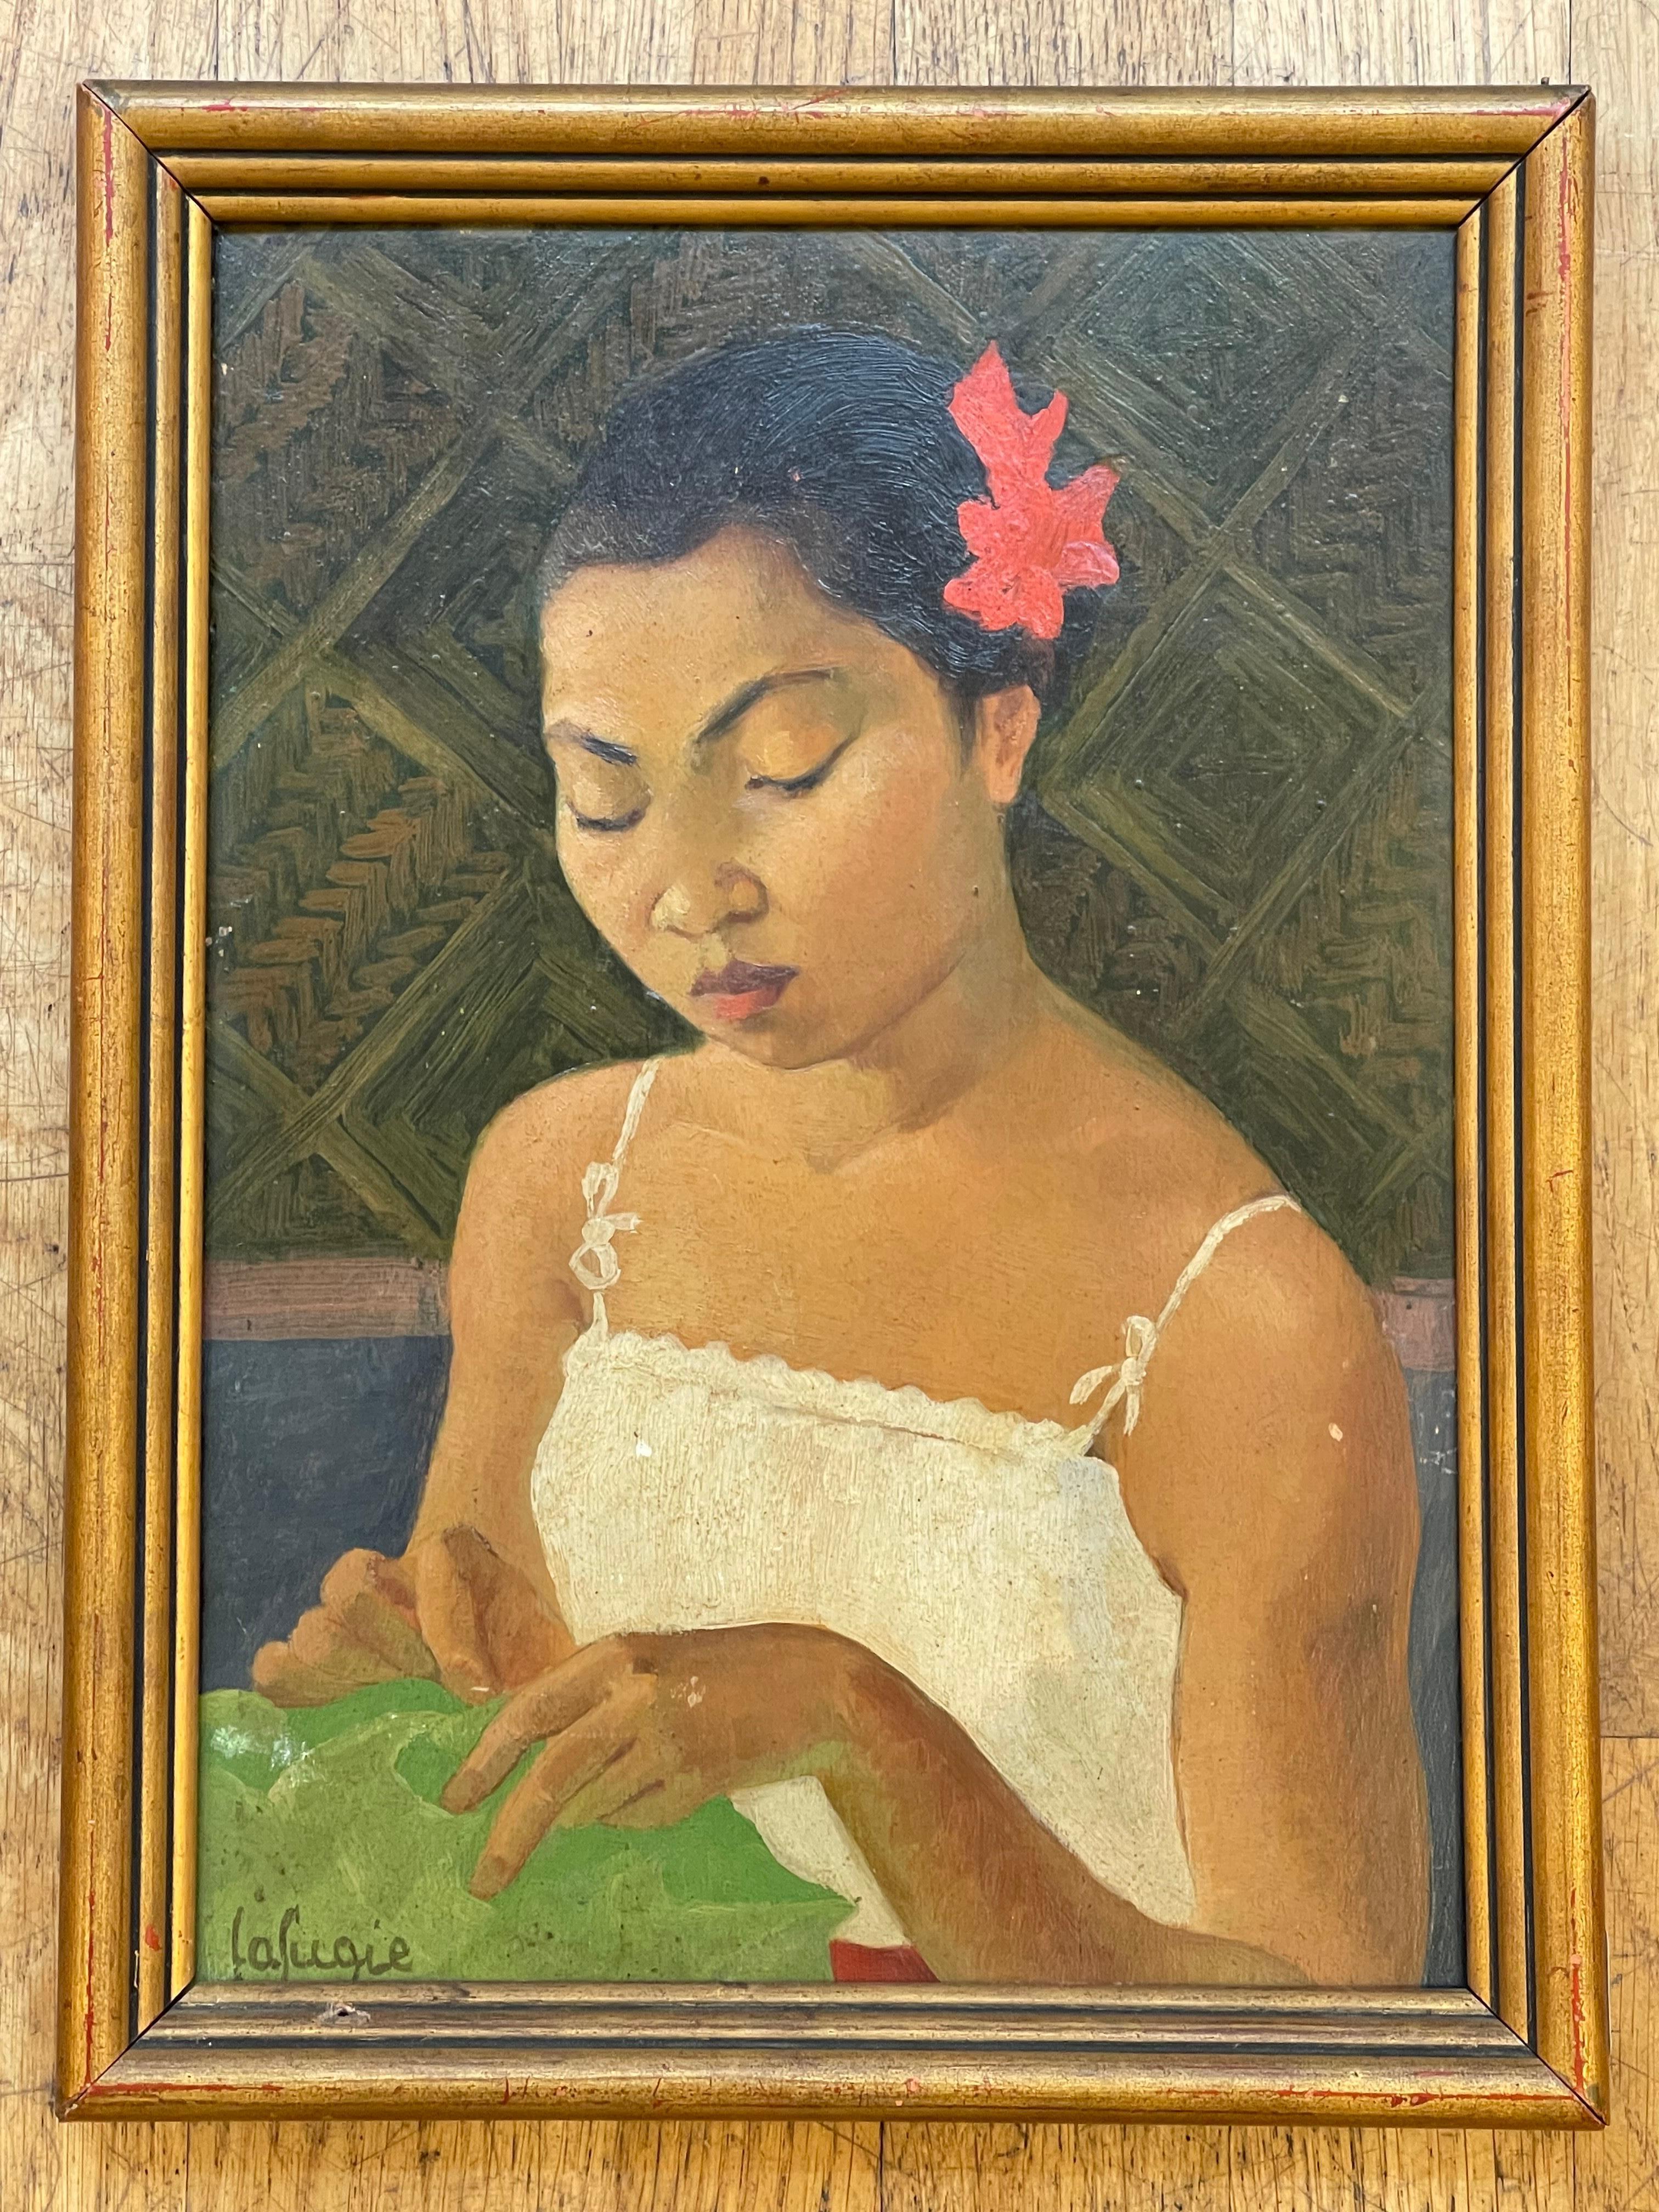 
Prächtig  Porträt eines jungen kambodschanischen Mädchens, von Léa LAFUGIE (1890-1972), Öl auf Tafel, 33 x 23,5 cm

Léa Lafugie war eine in Paris geborene französische Malerin, die für ihre von Reisen inspirierten Porträts und Landschaften bekannt